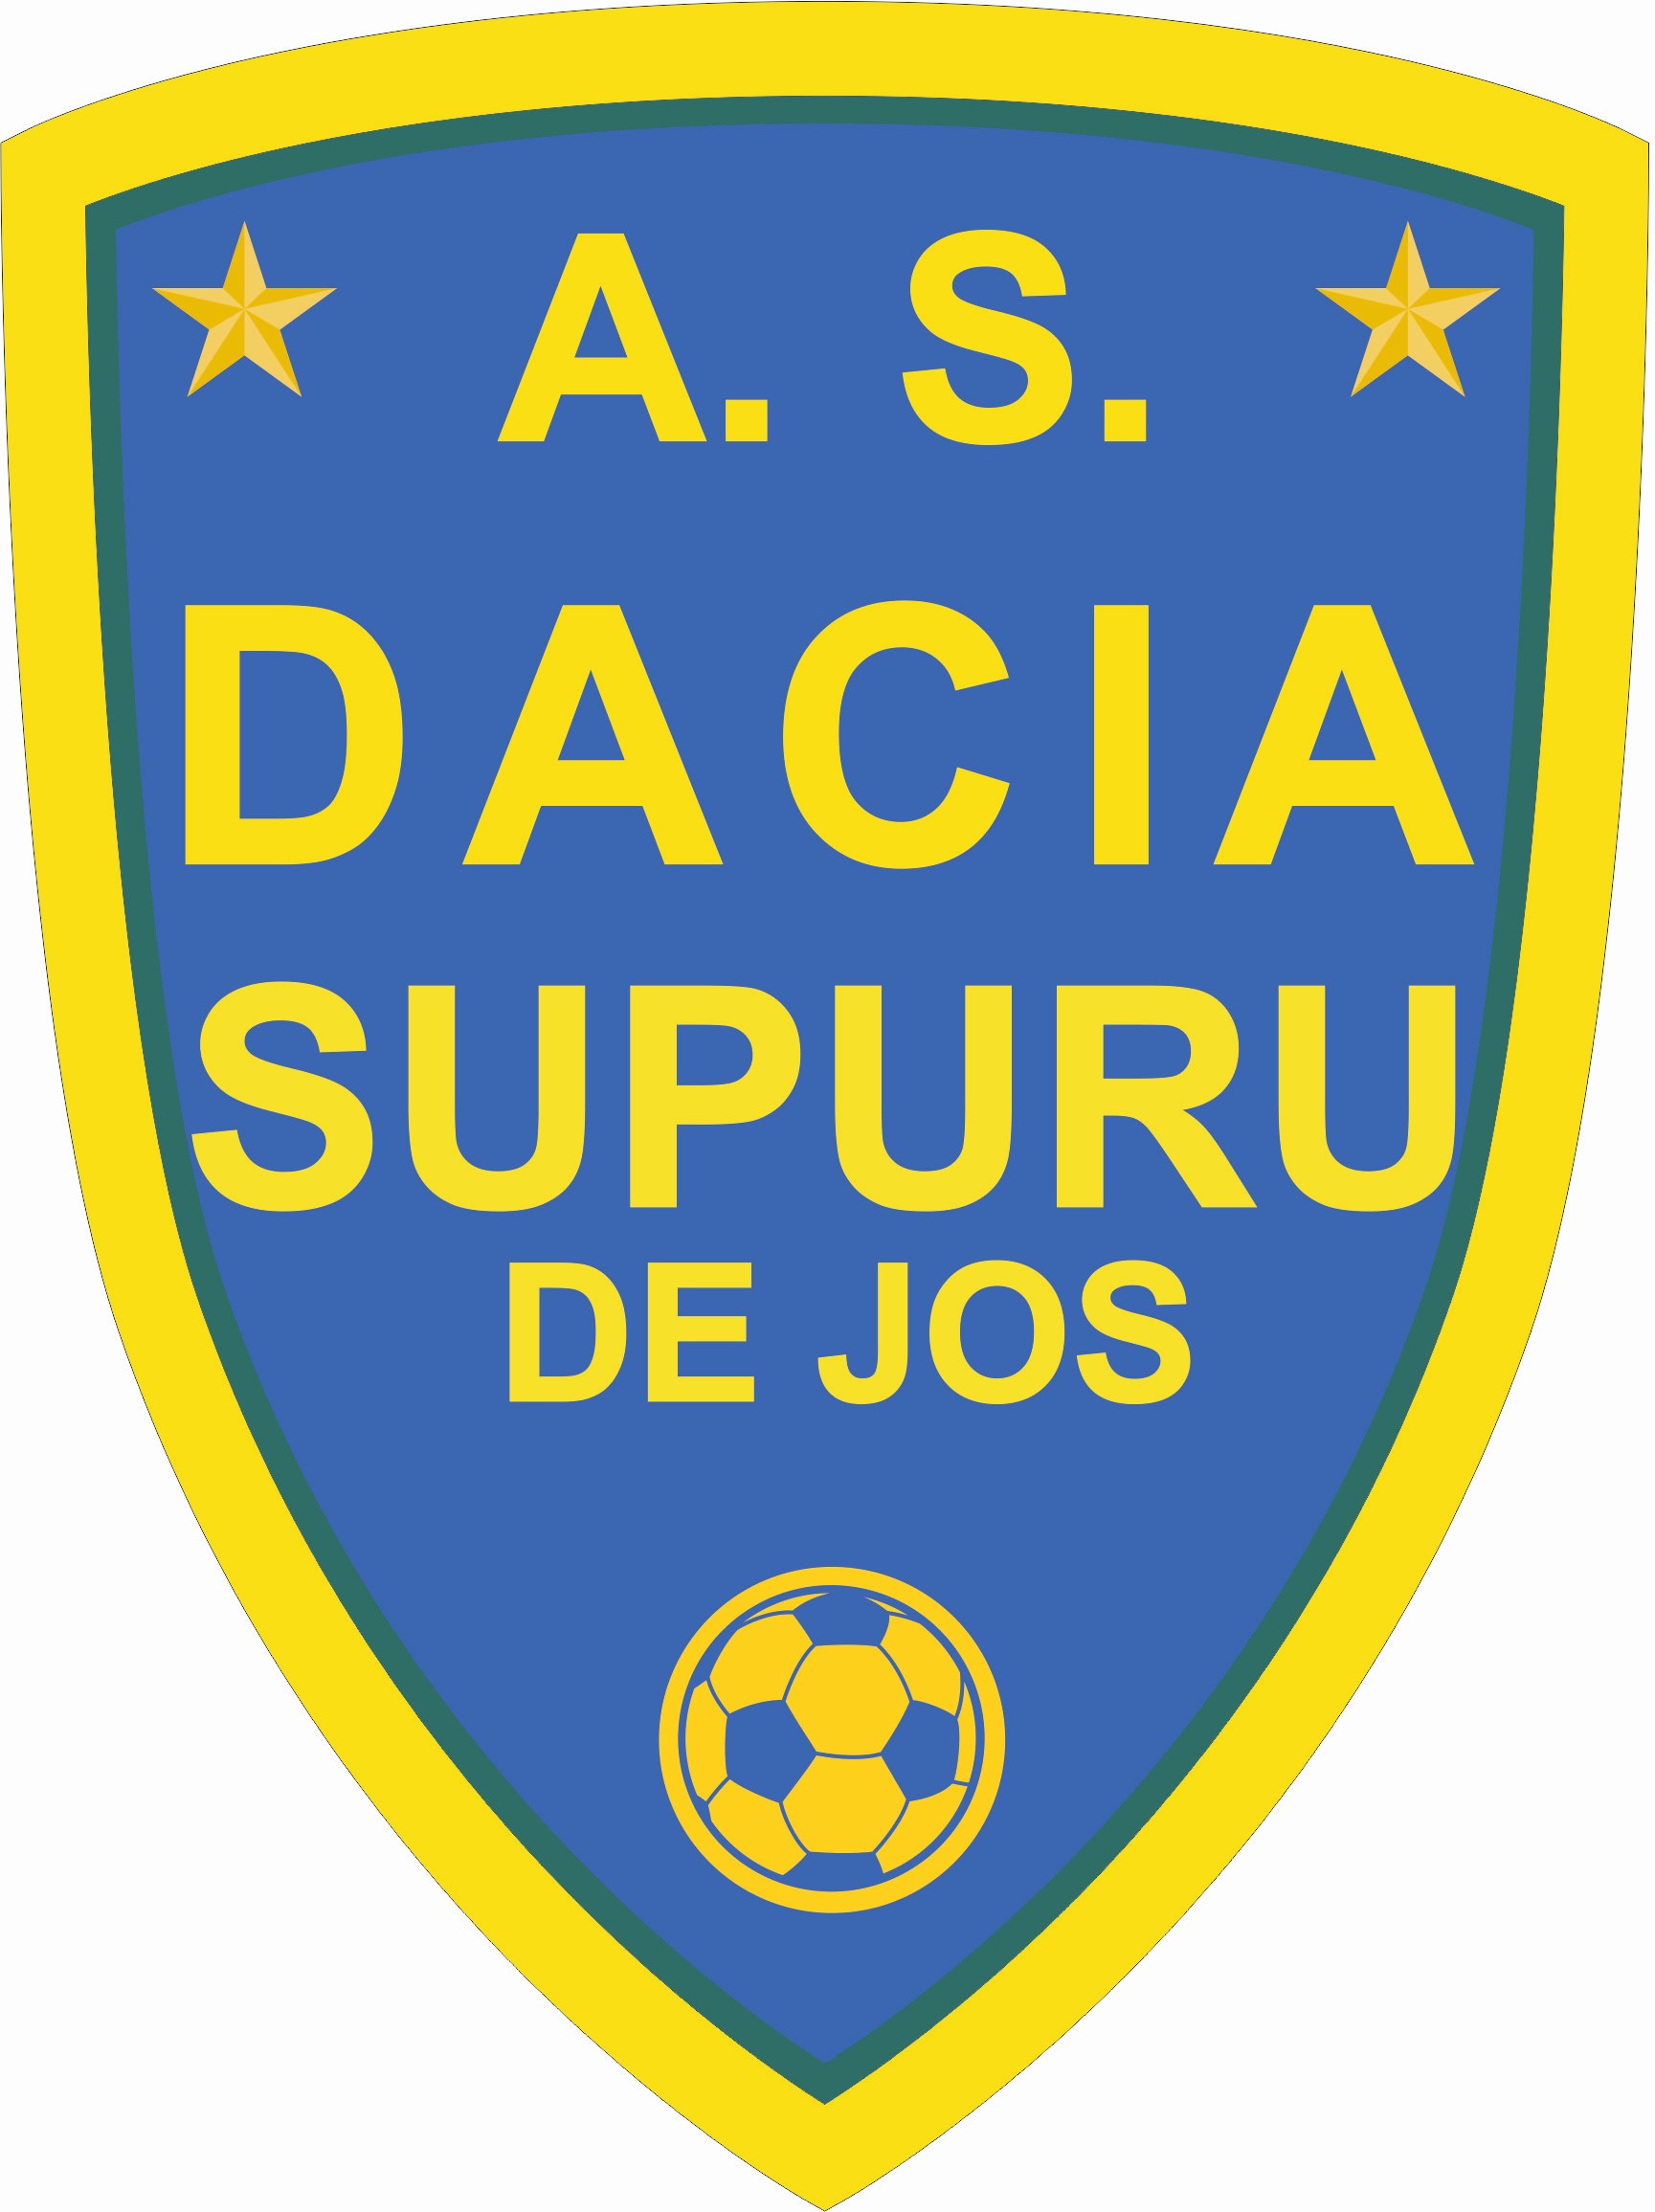 Dacia Supur